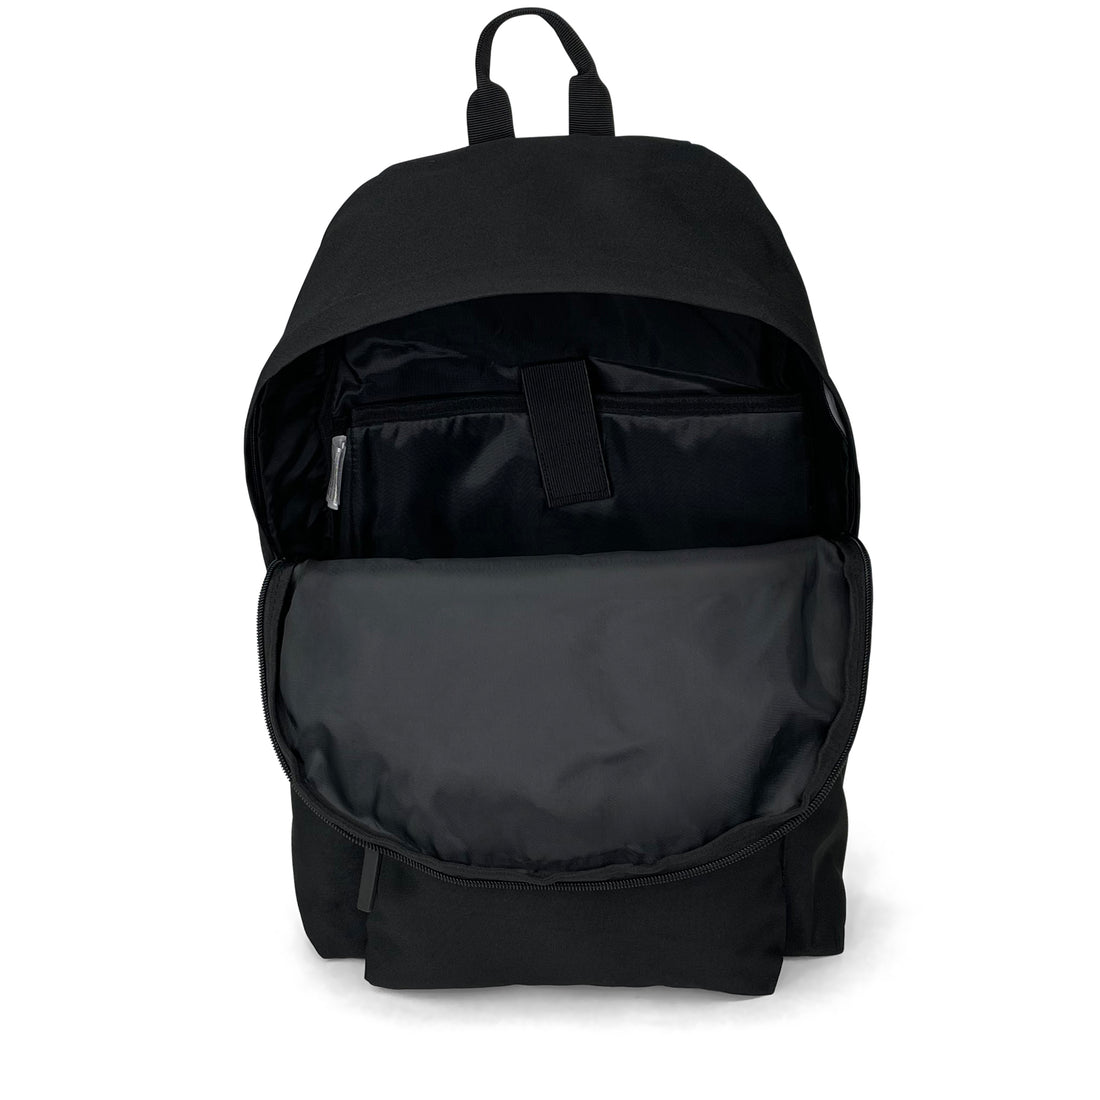 Reflective Trim Backpack-Backpack-11 Degrees-Black-SchoolBagsAndStuff